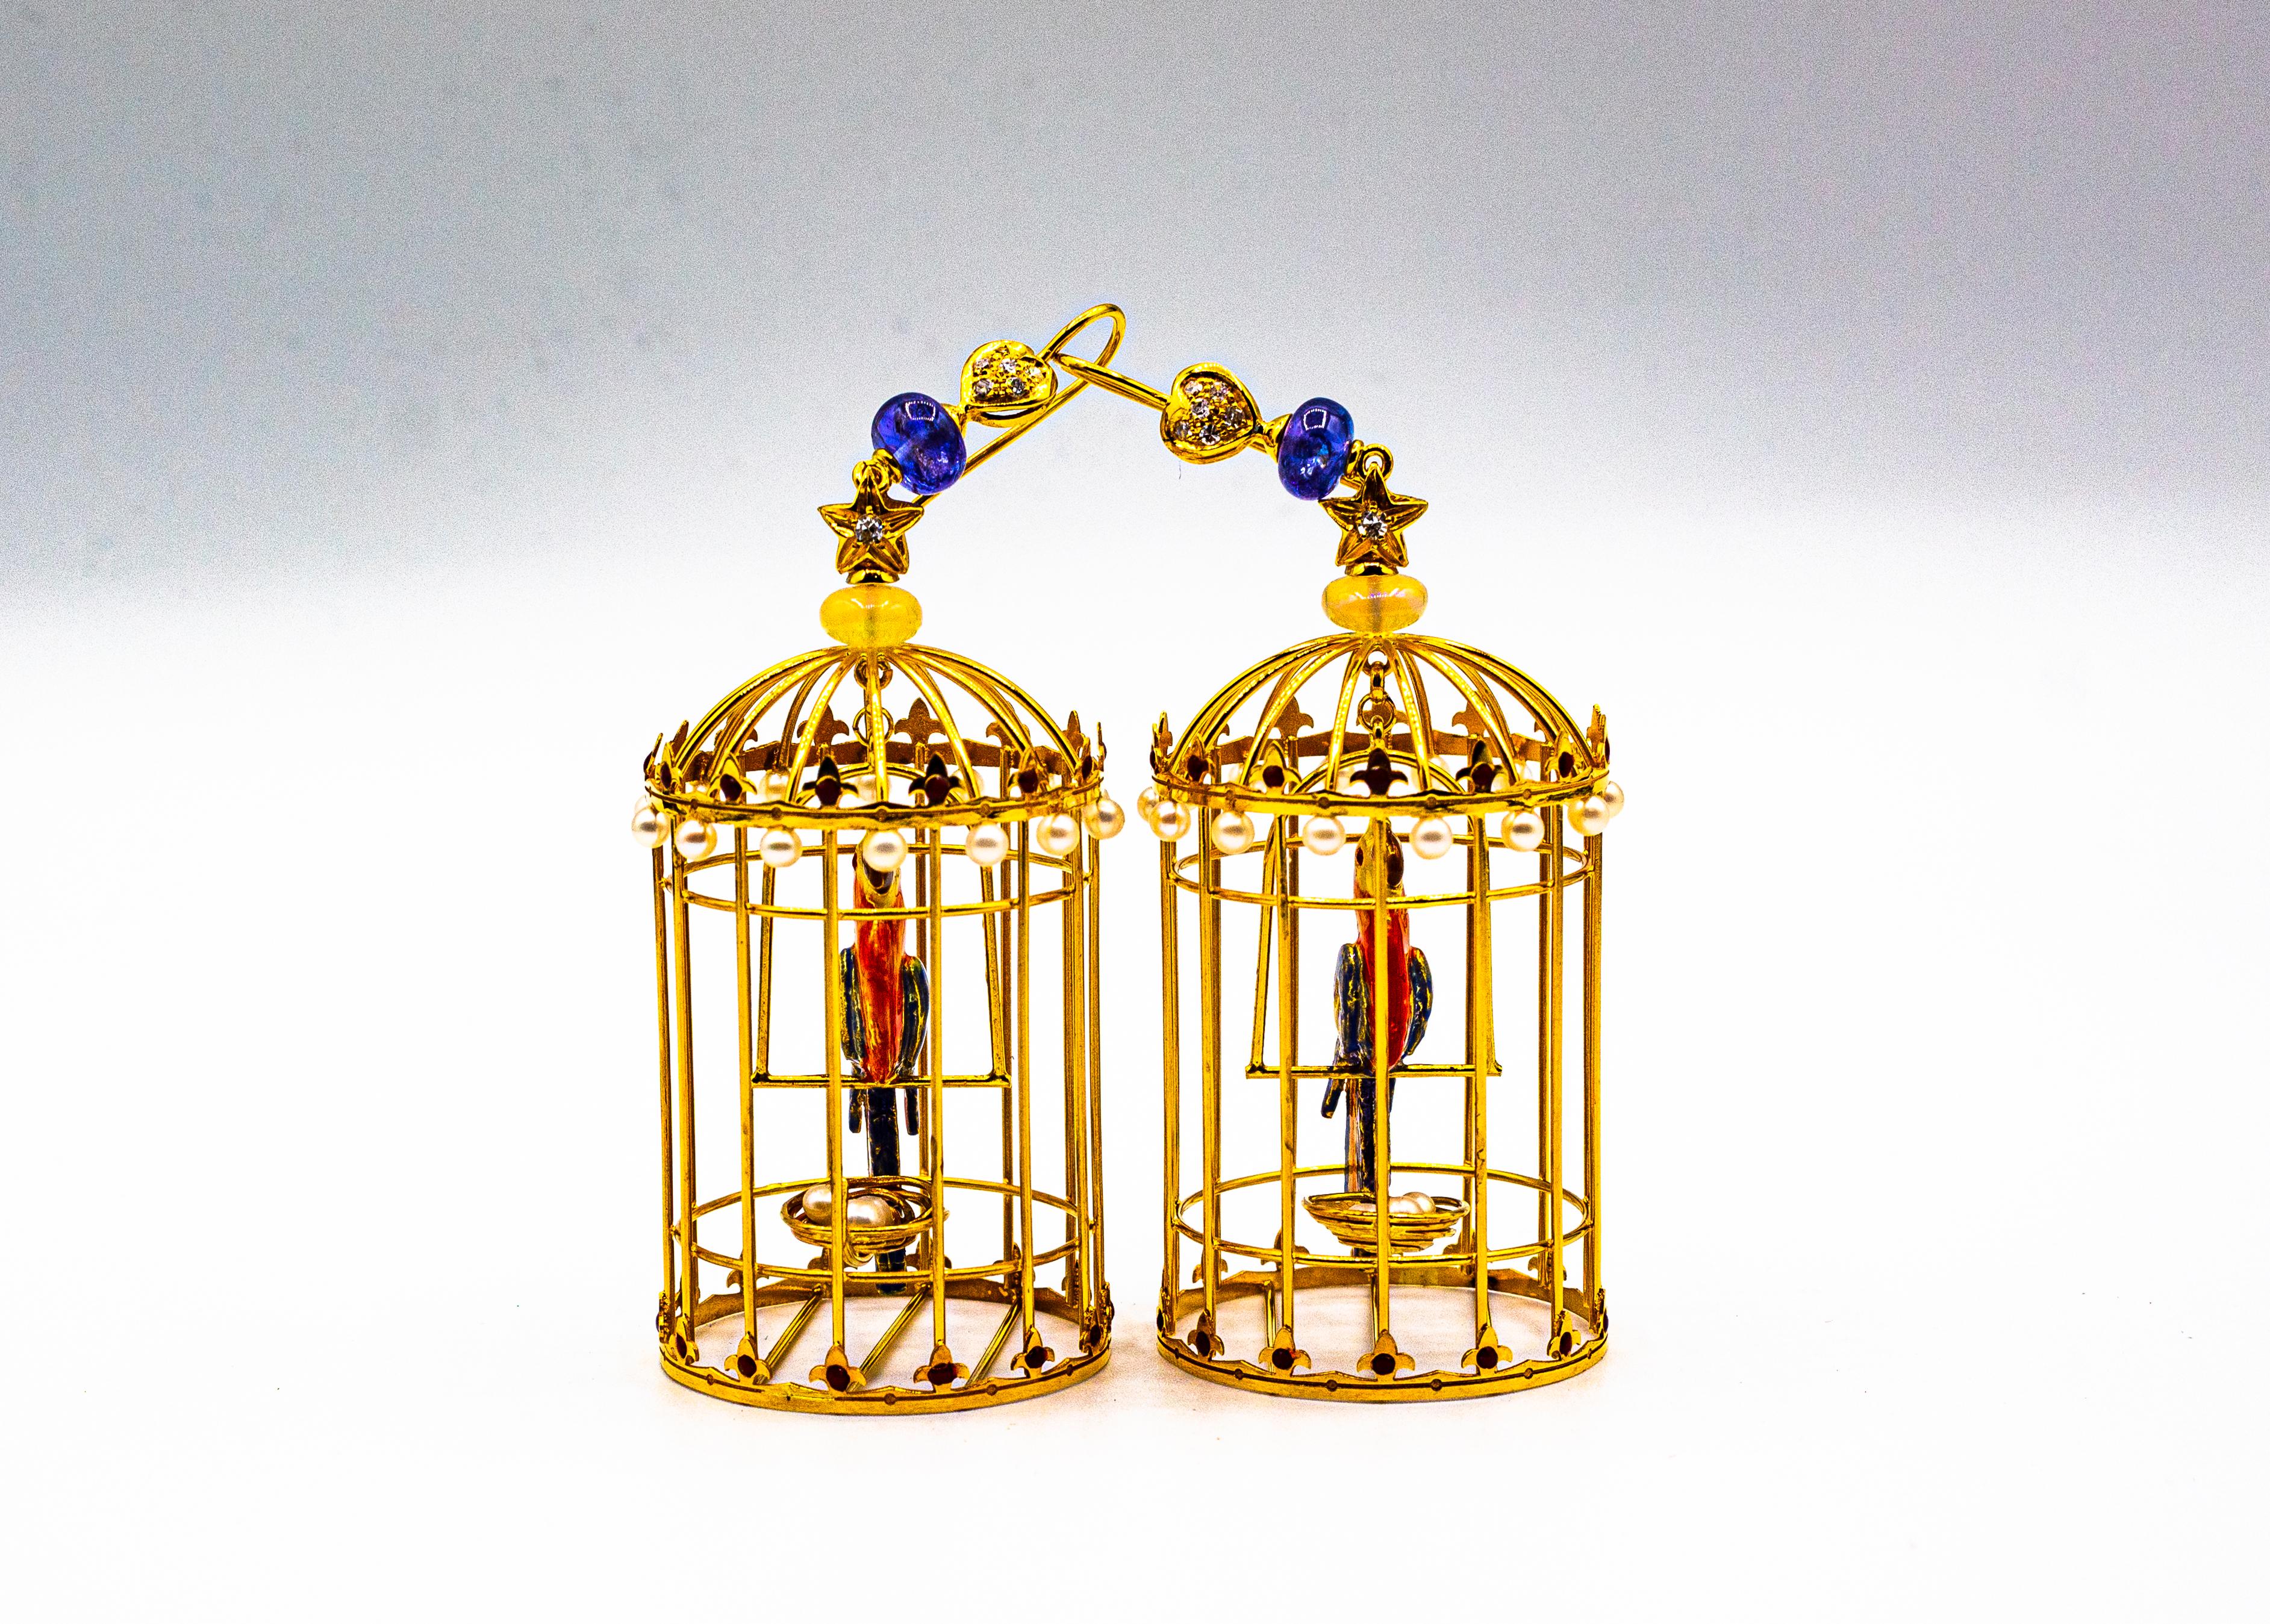 birdcage earrings